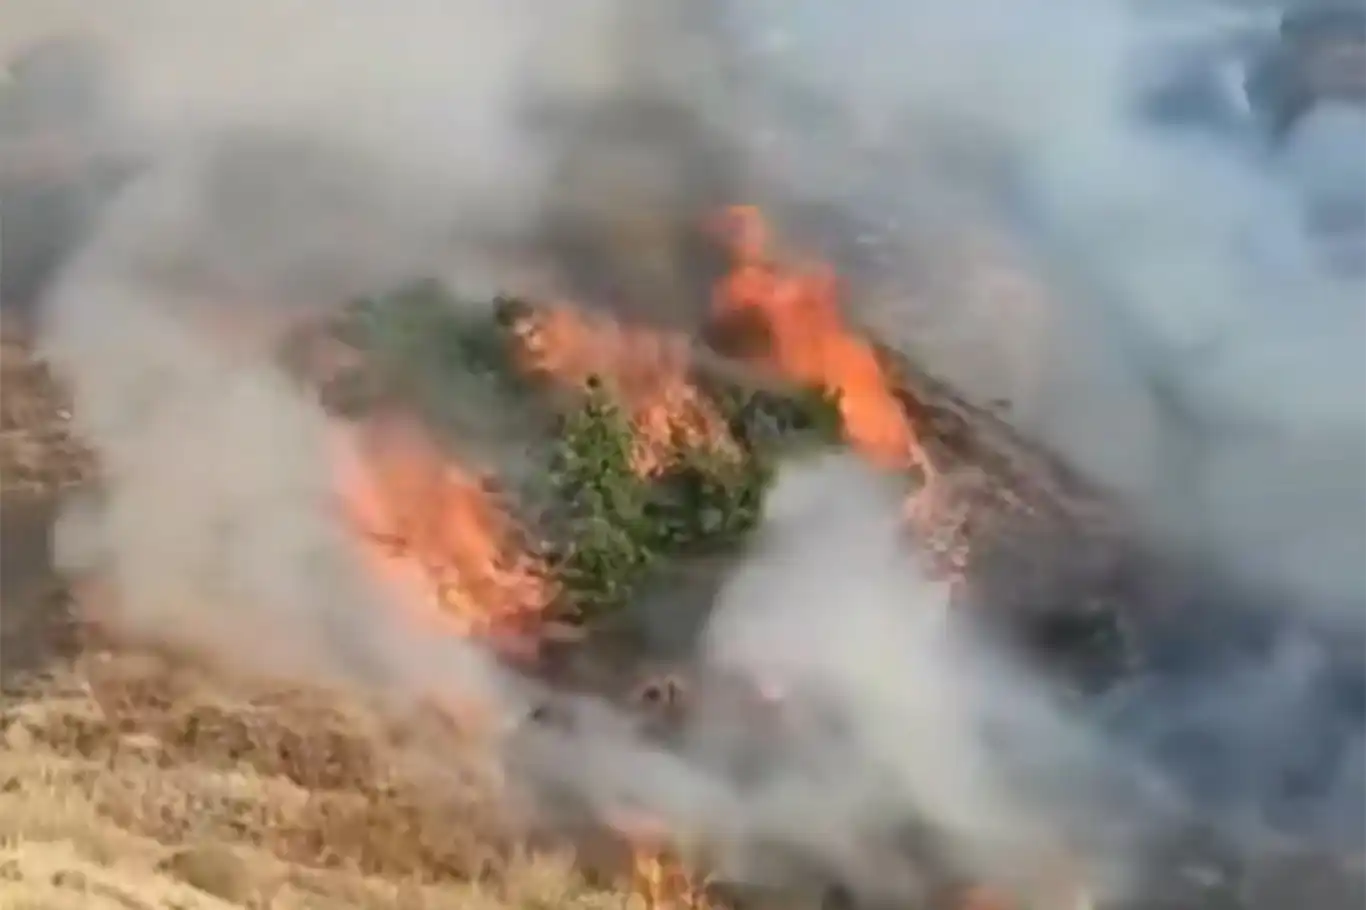 Bingöl’de orman yangını